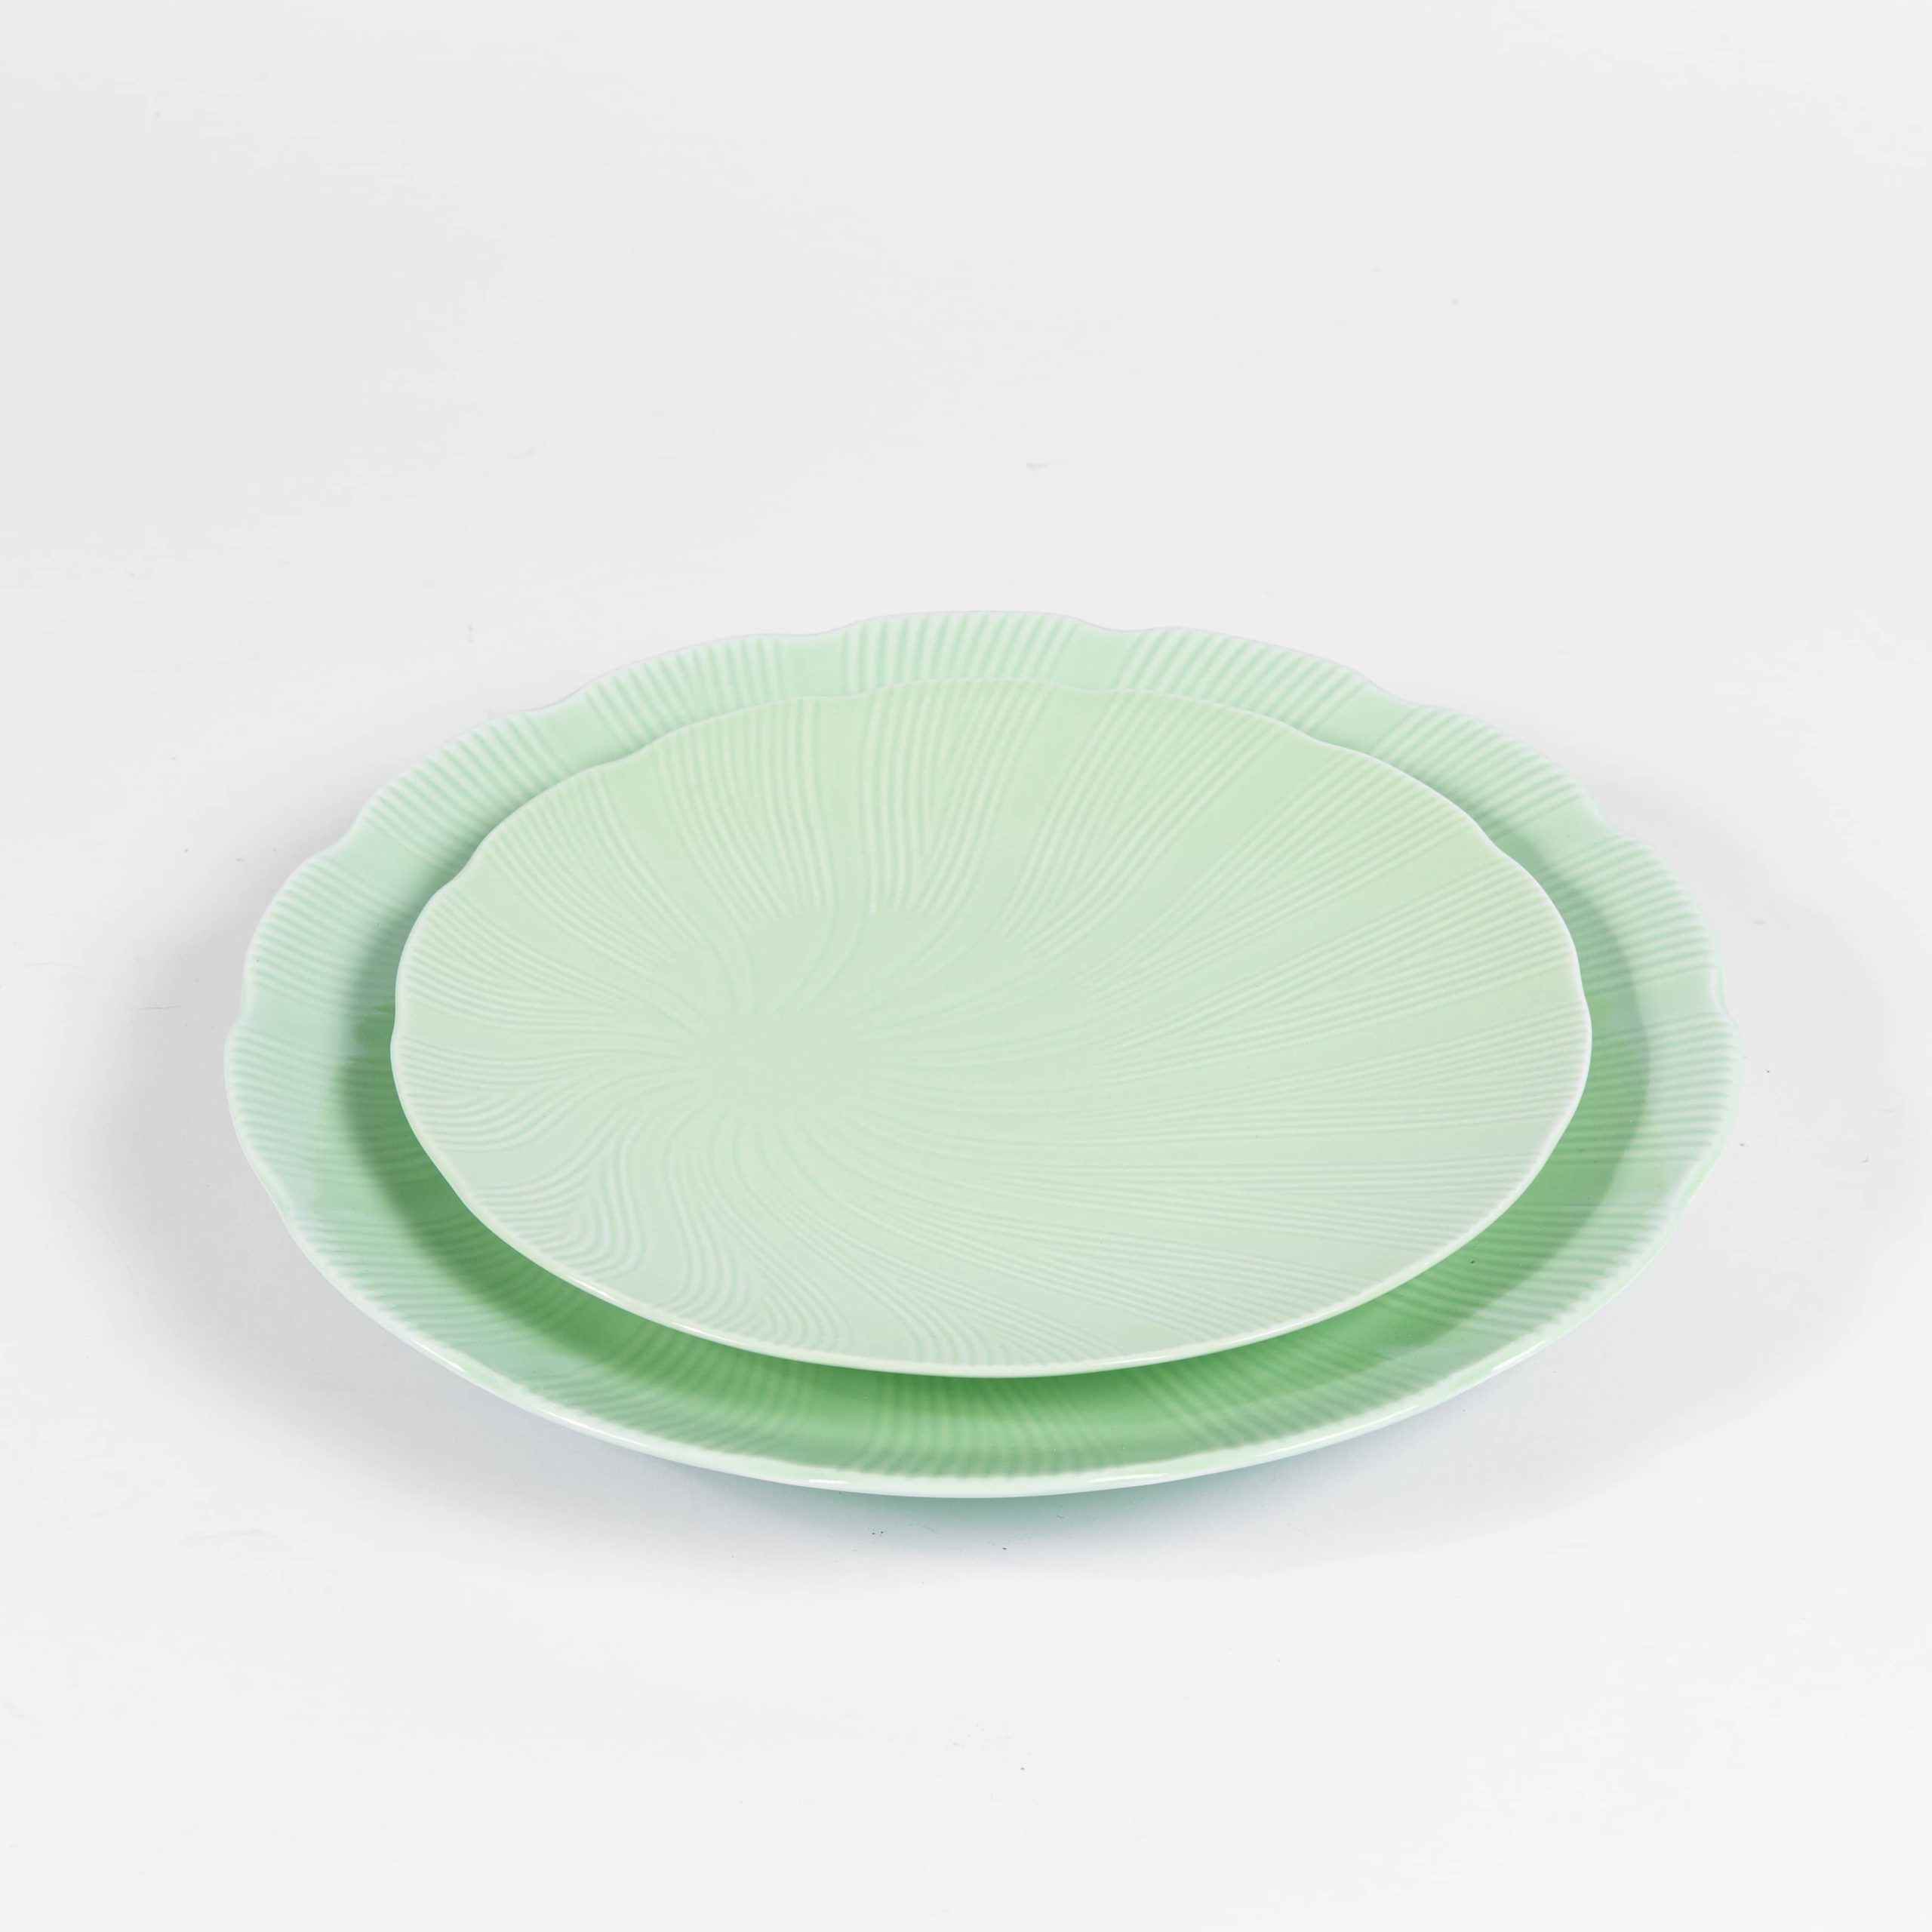 4x Assiettes en plastique vert - 34 cm - Assiette plate - Assiette